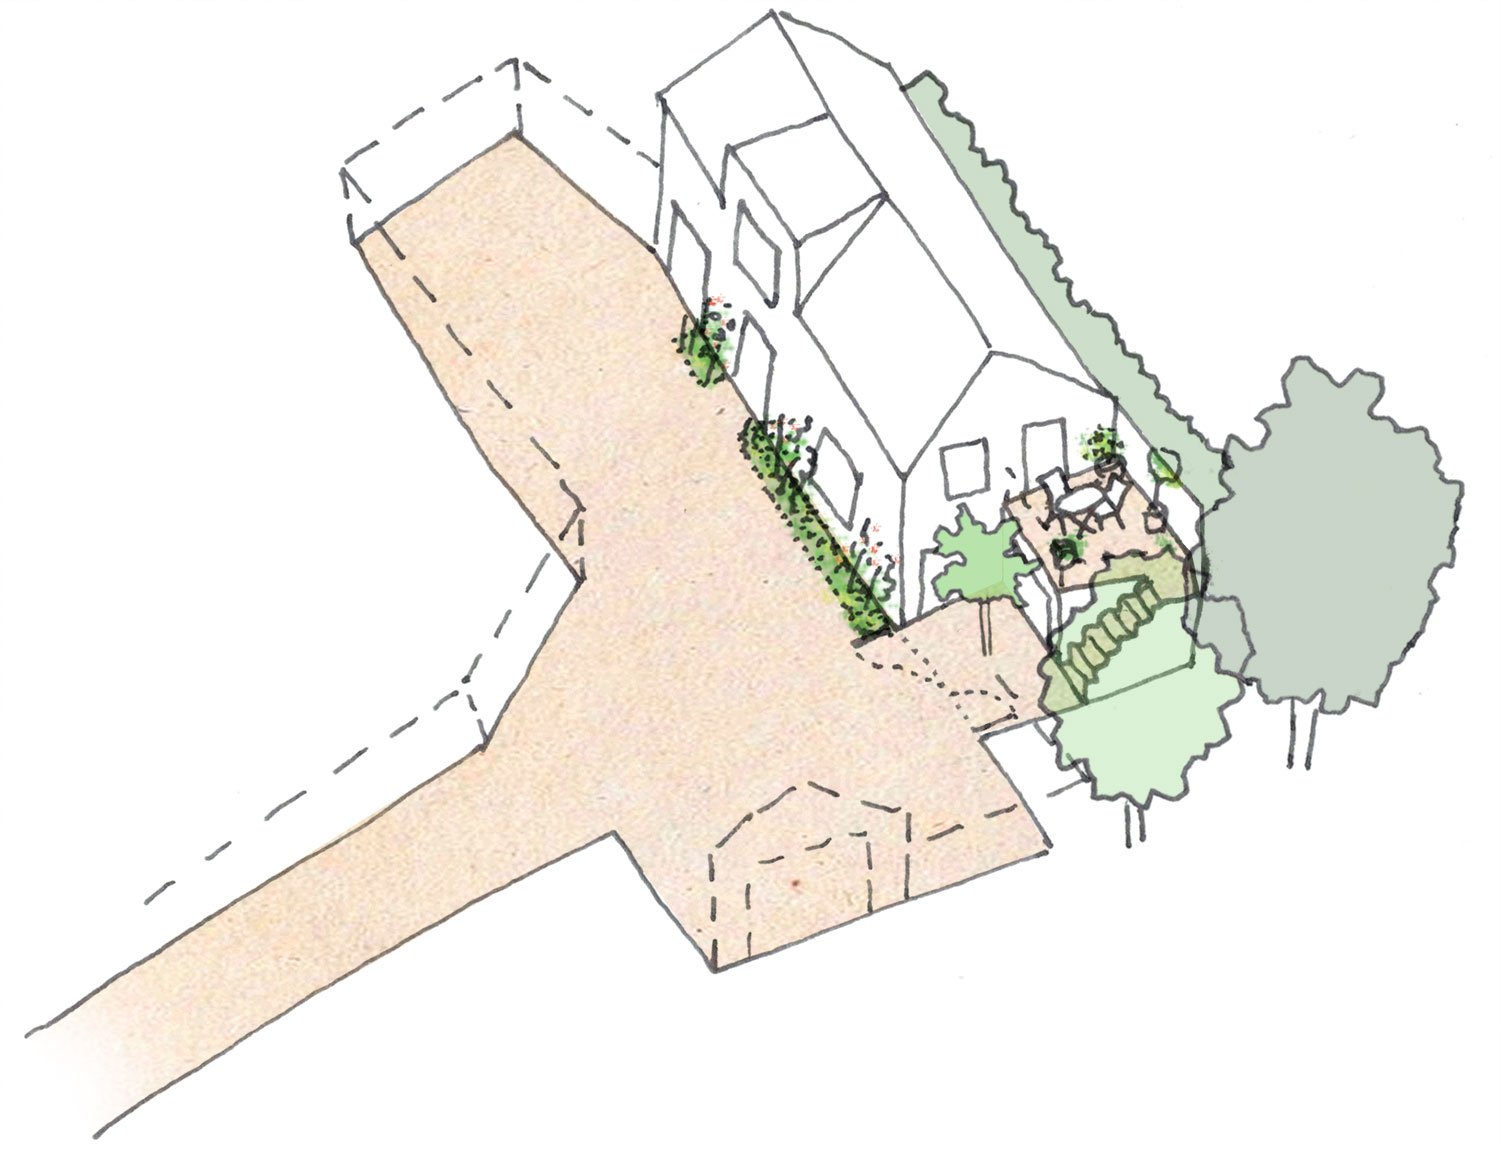 Evercreech-somerset-architect-prewett-bizley-house-passivhaus-landscape.jpg